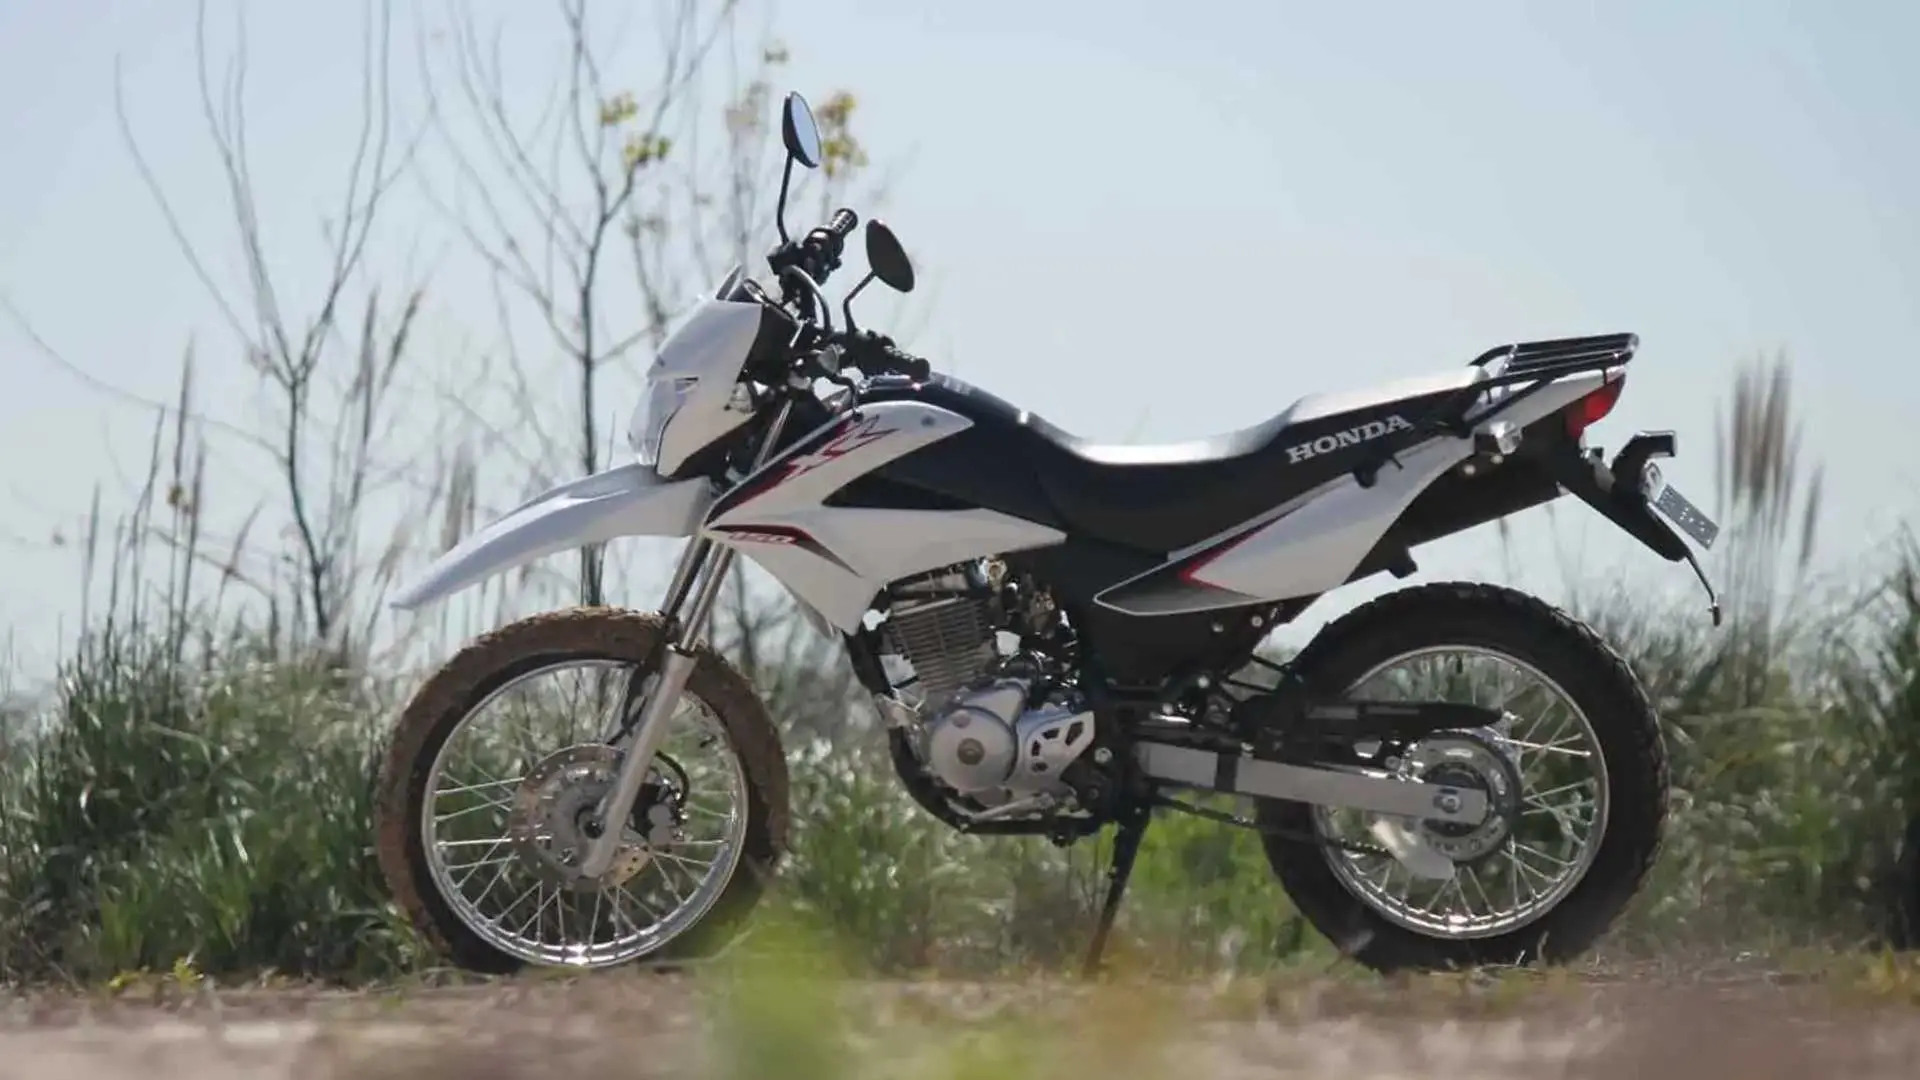 personalización de motos de ferrary xr150 - Cuántos km hace un XR 150